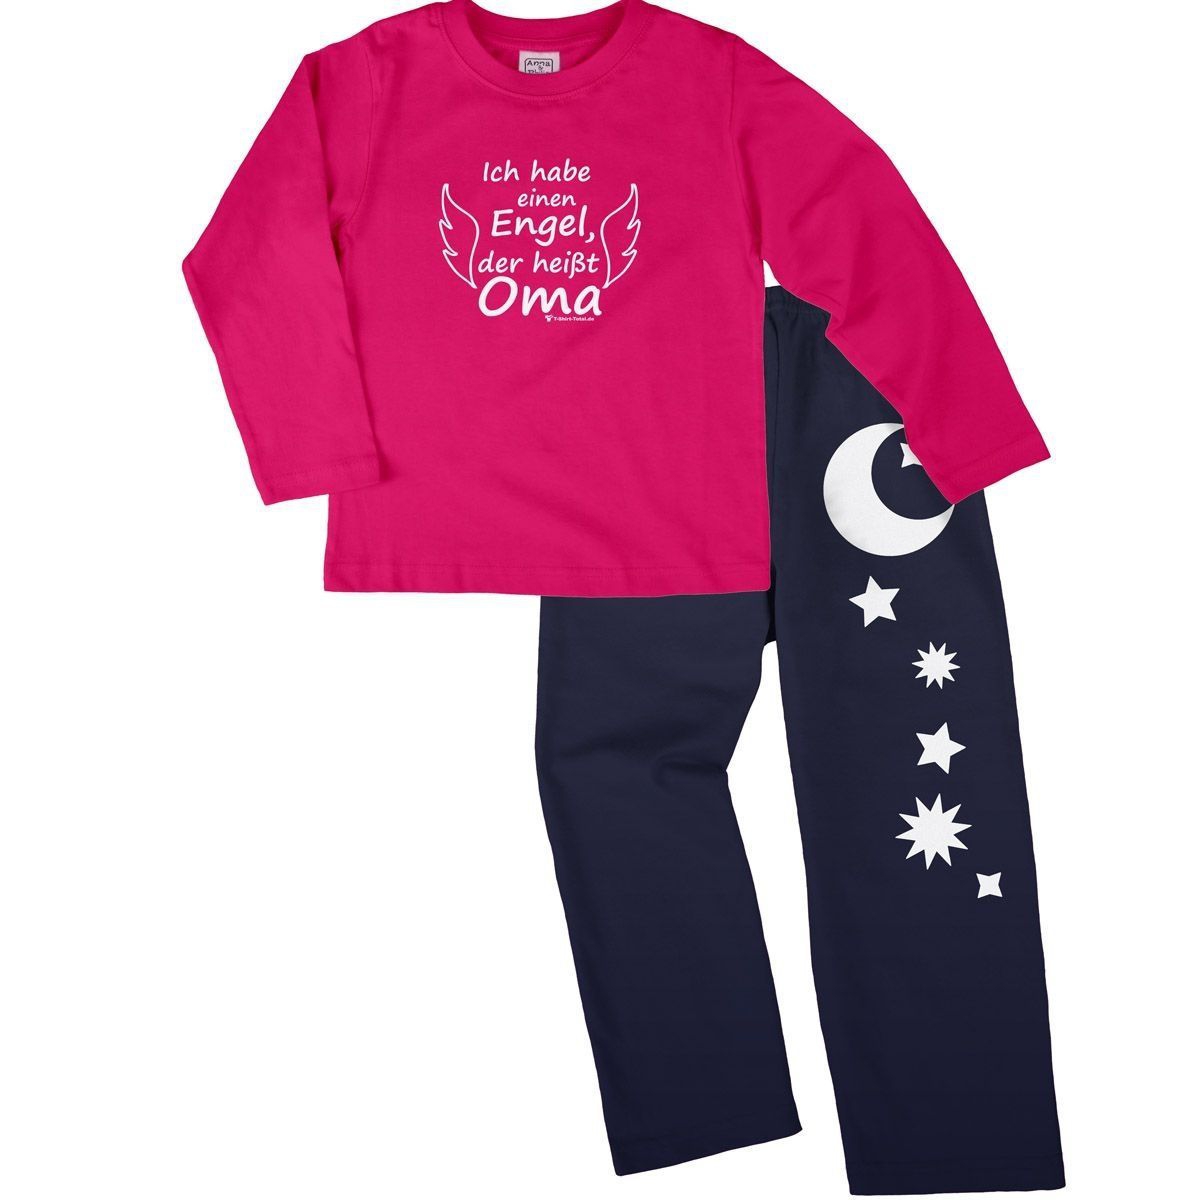 Engel Oma Pyjama Set pink / navy 122 / 128